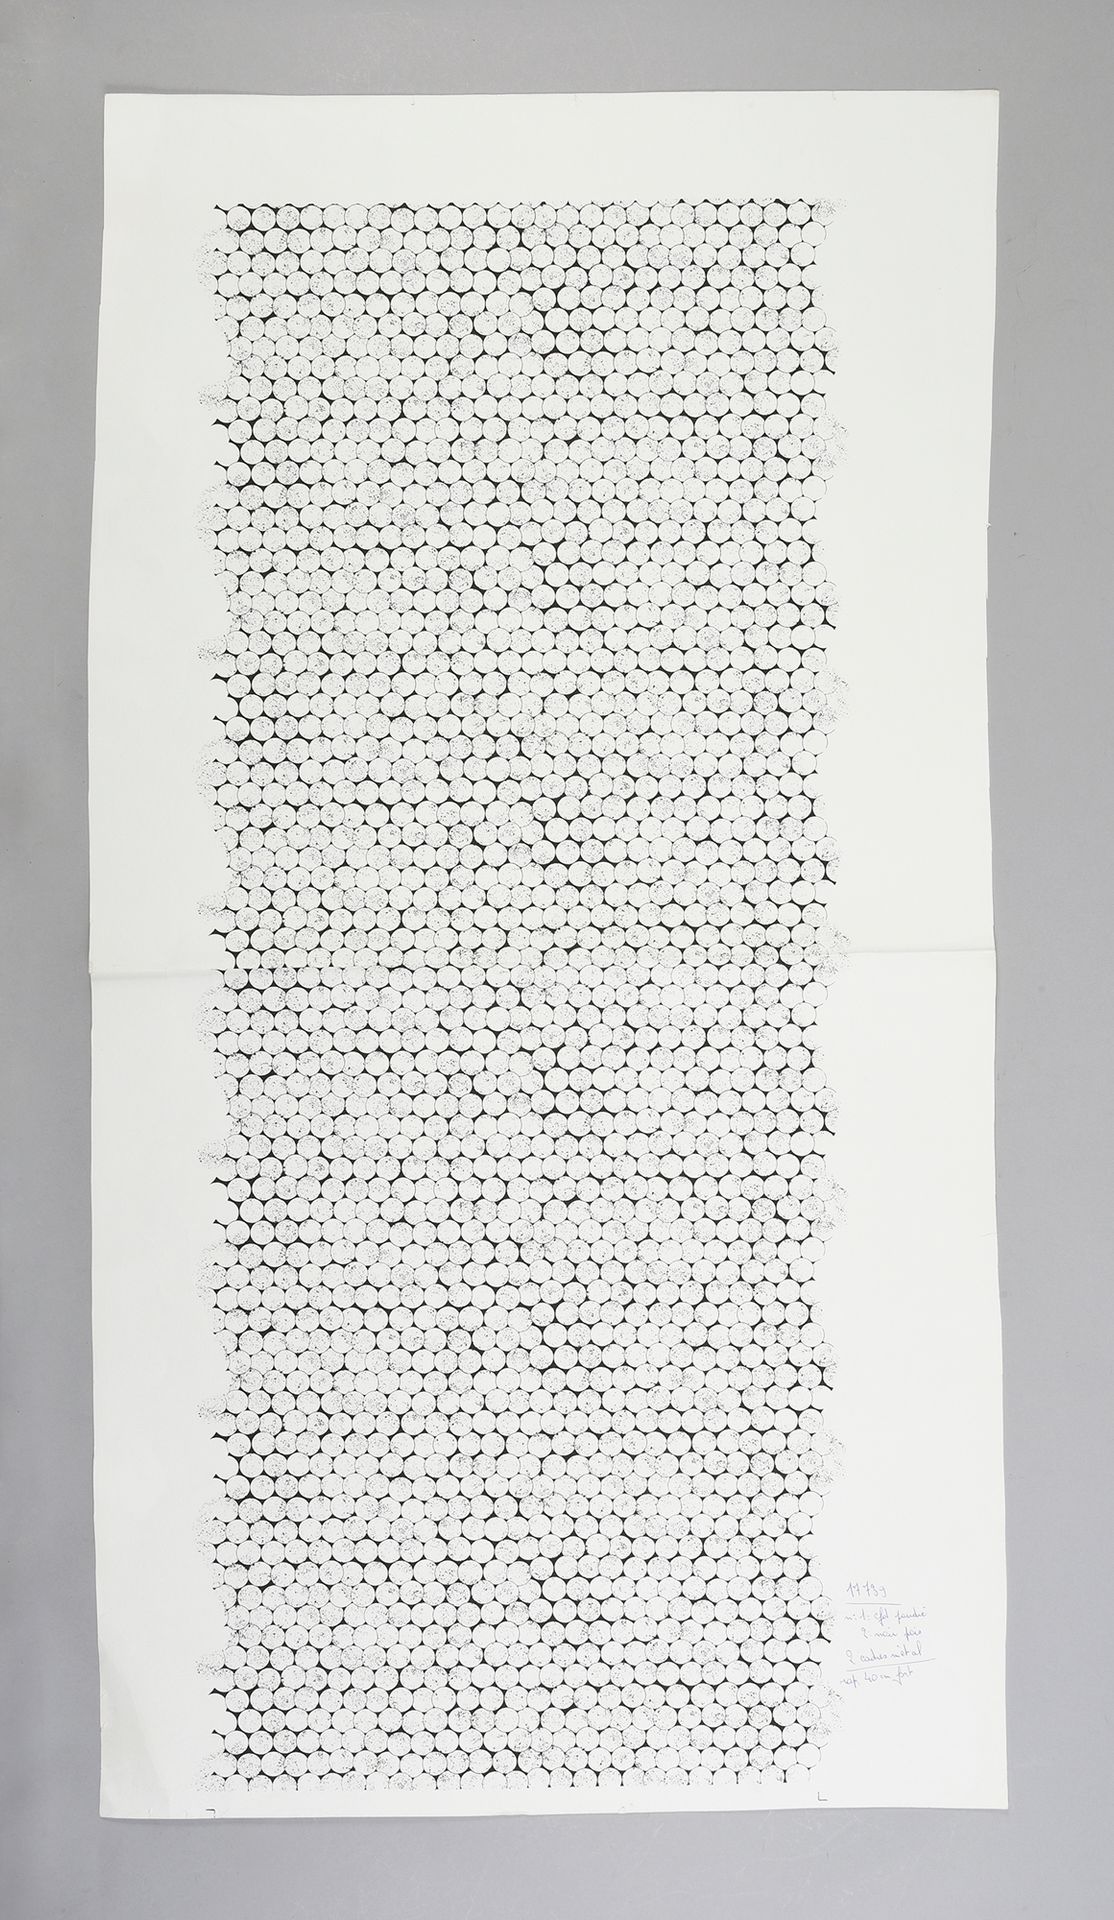 Null 一套用于高级时装的丝绸版画，Staron，大约1970年，用2到9种颜色印在纸上；小的重复的几何图案，华丽的条纹，非常形象的抽象，包括雪佛兰和条纹。
&hellip;